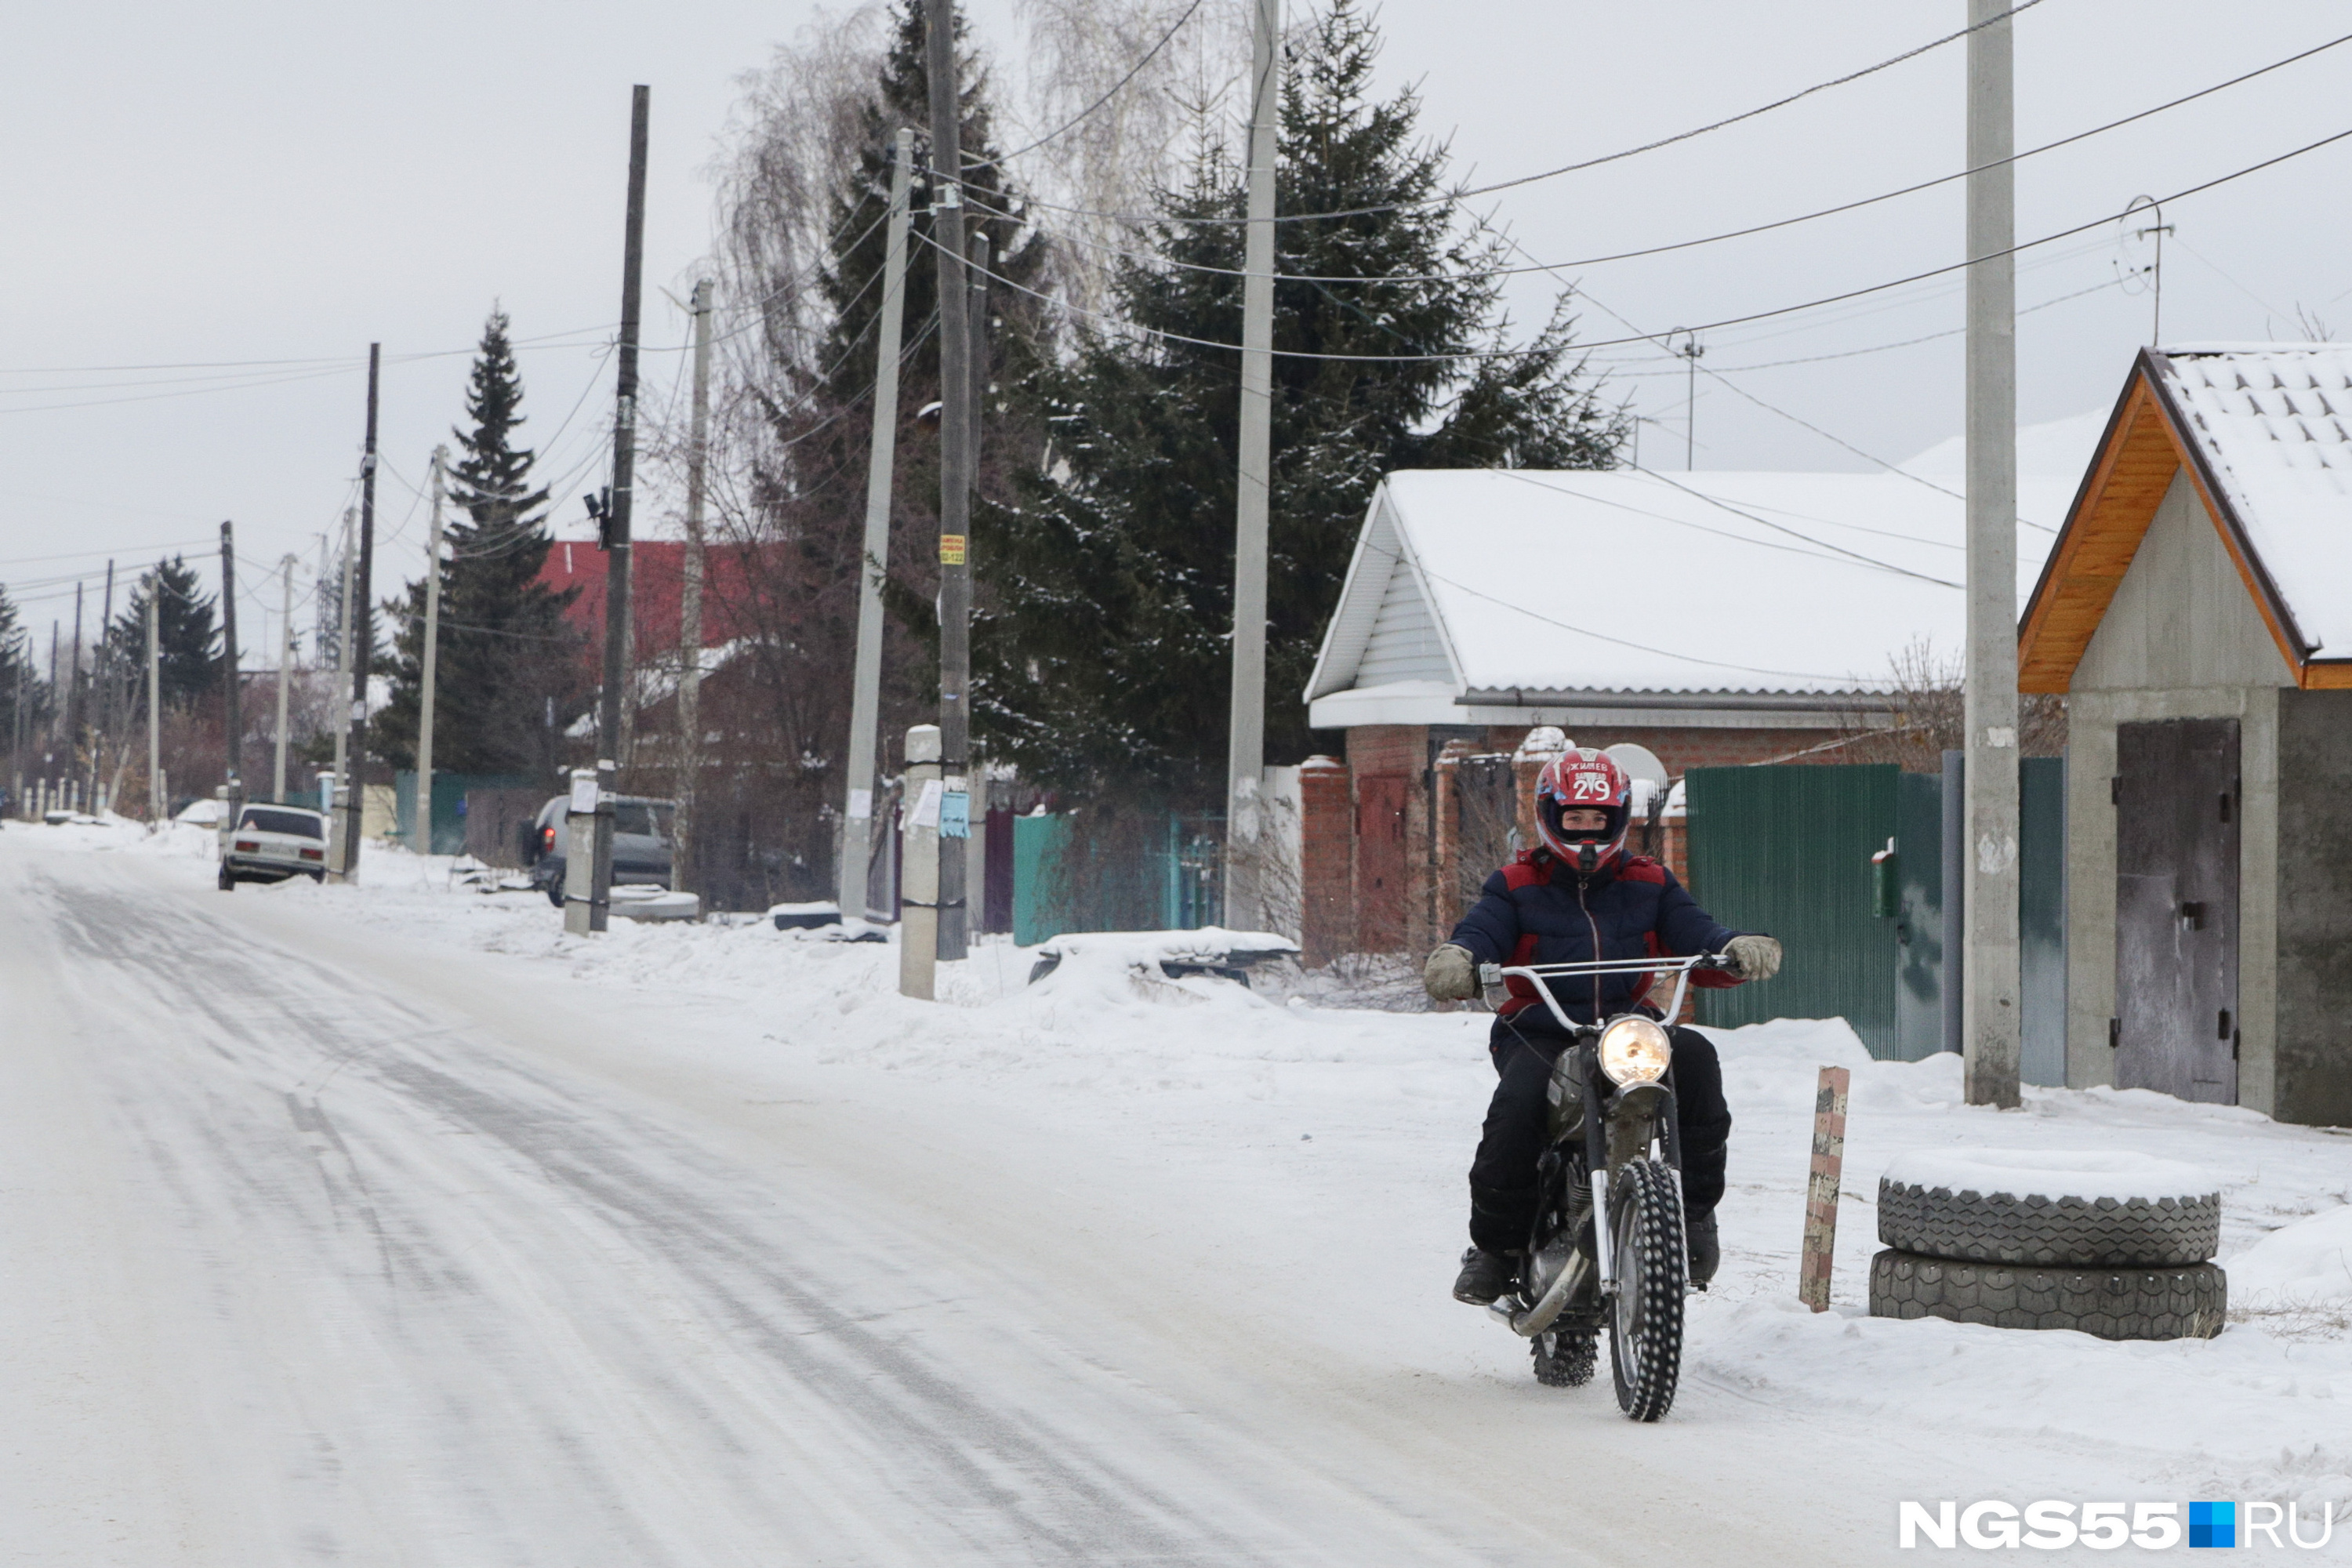 Мотоциклы и снегоходы <nobr class="_">здесь —</nobr> довольно популярный вид транспорта